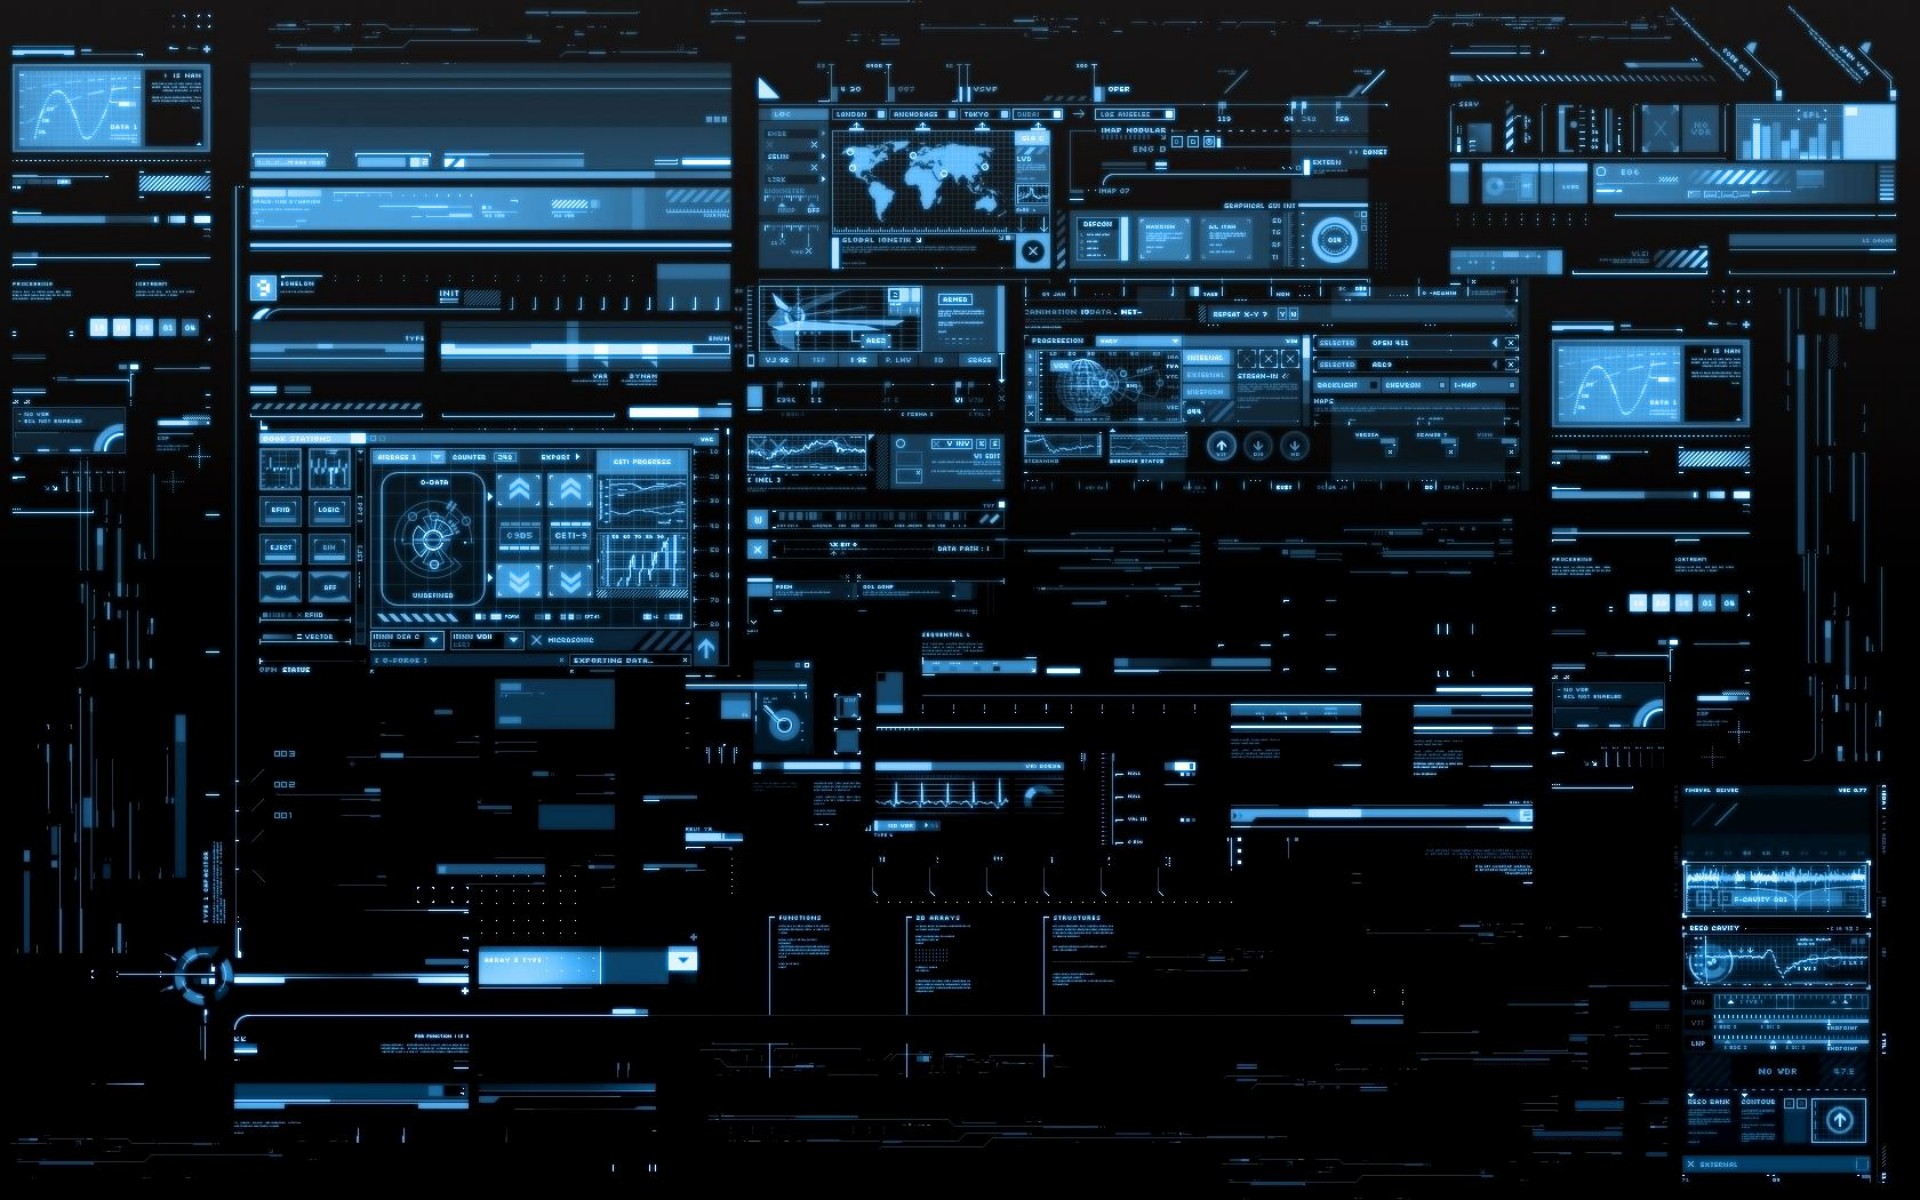 Wallpaper, digital art, night, technology, Computer screen, metropolis, electronics, darkness, screenshot, 1920x1200 px, computer wallpaper 1920x1200